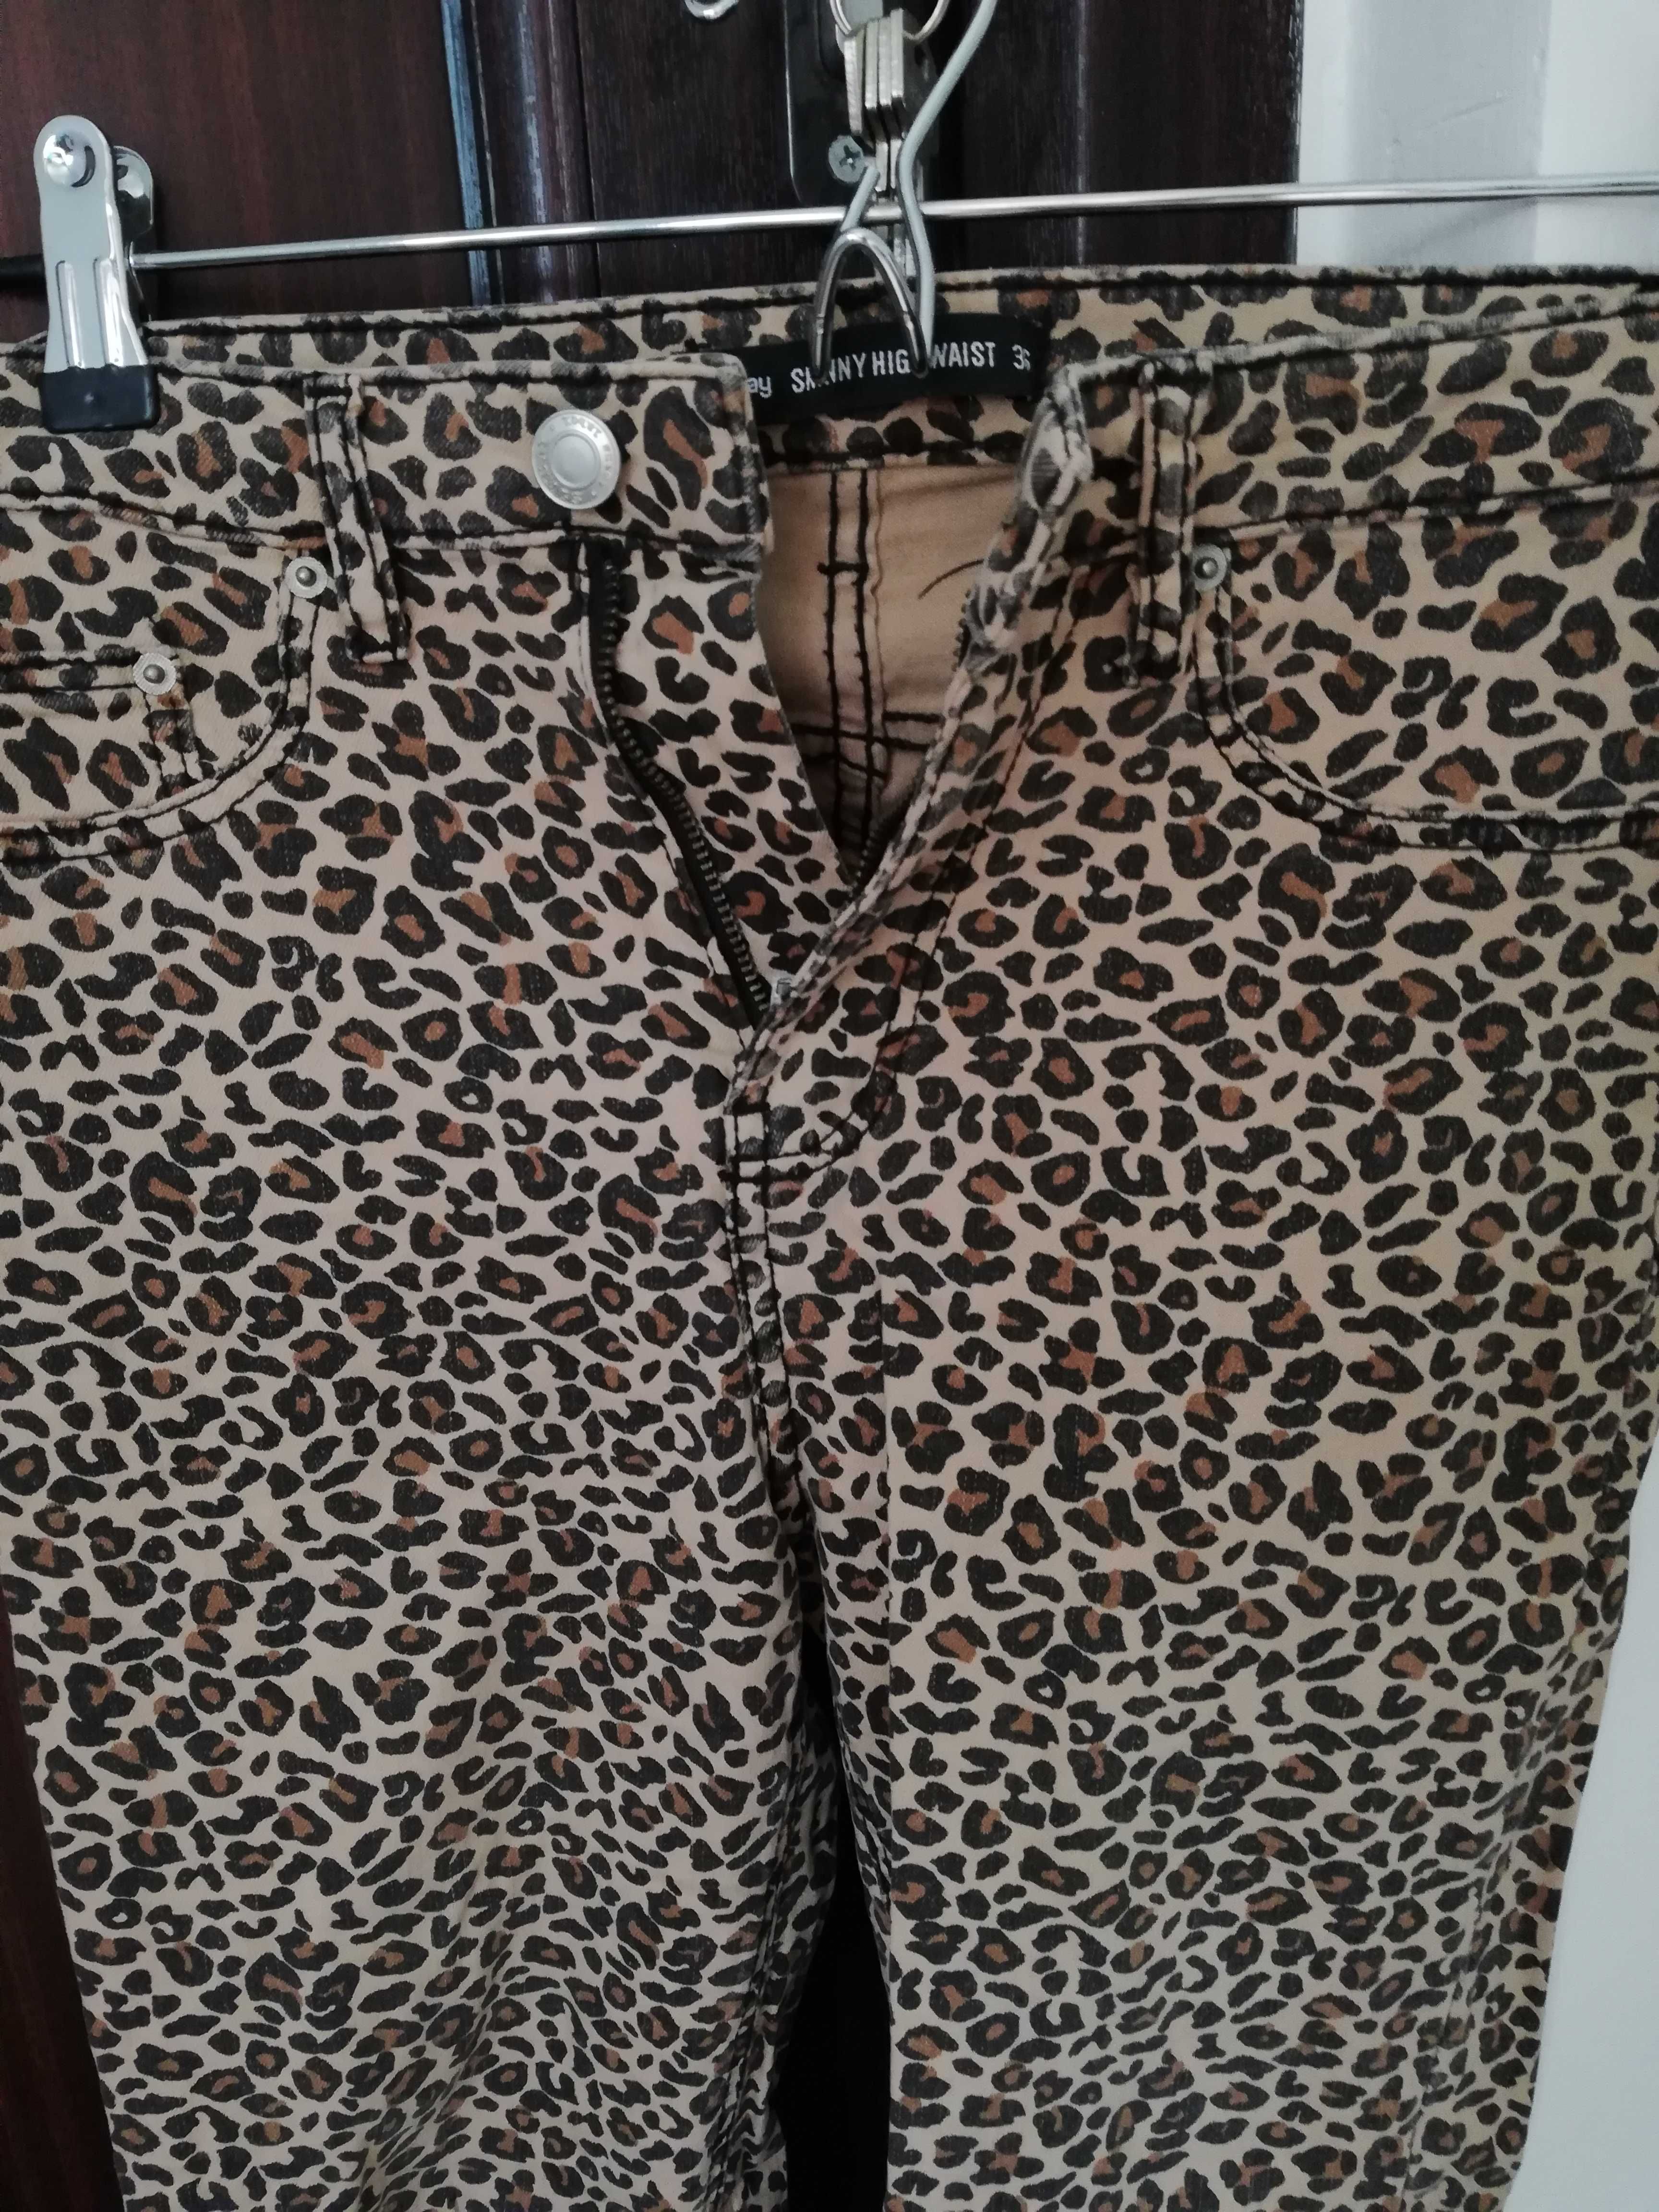 Vând pantaloni noi cu imprimeu leopard